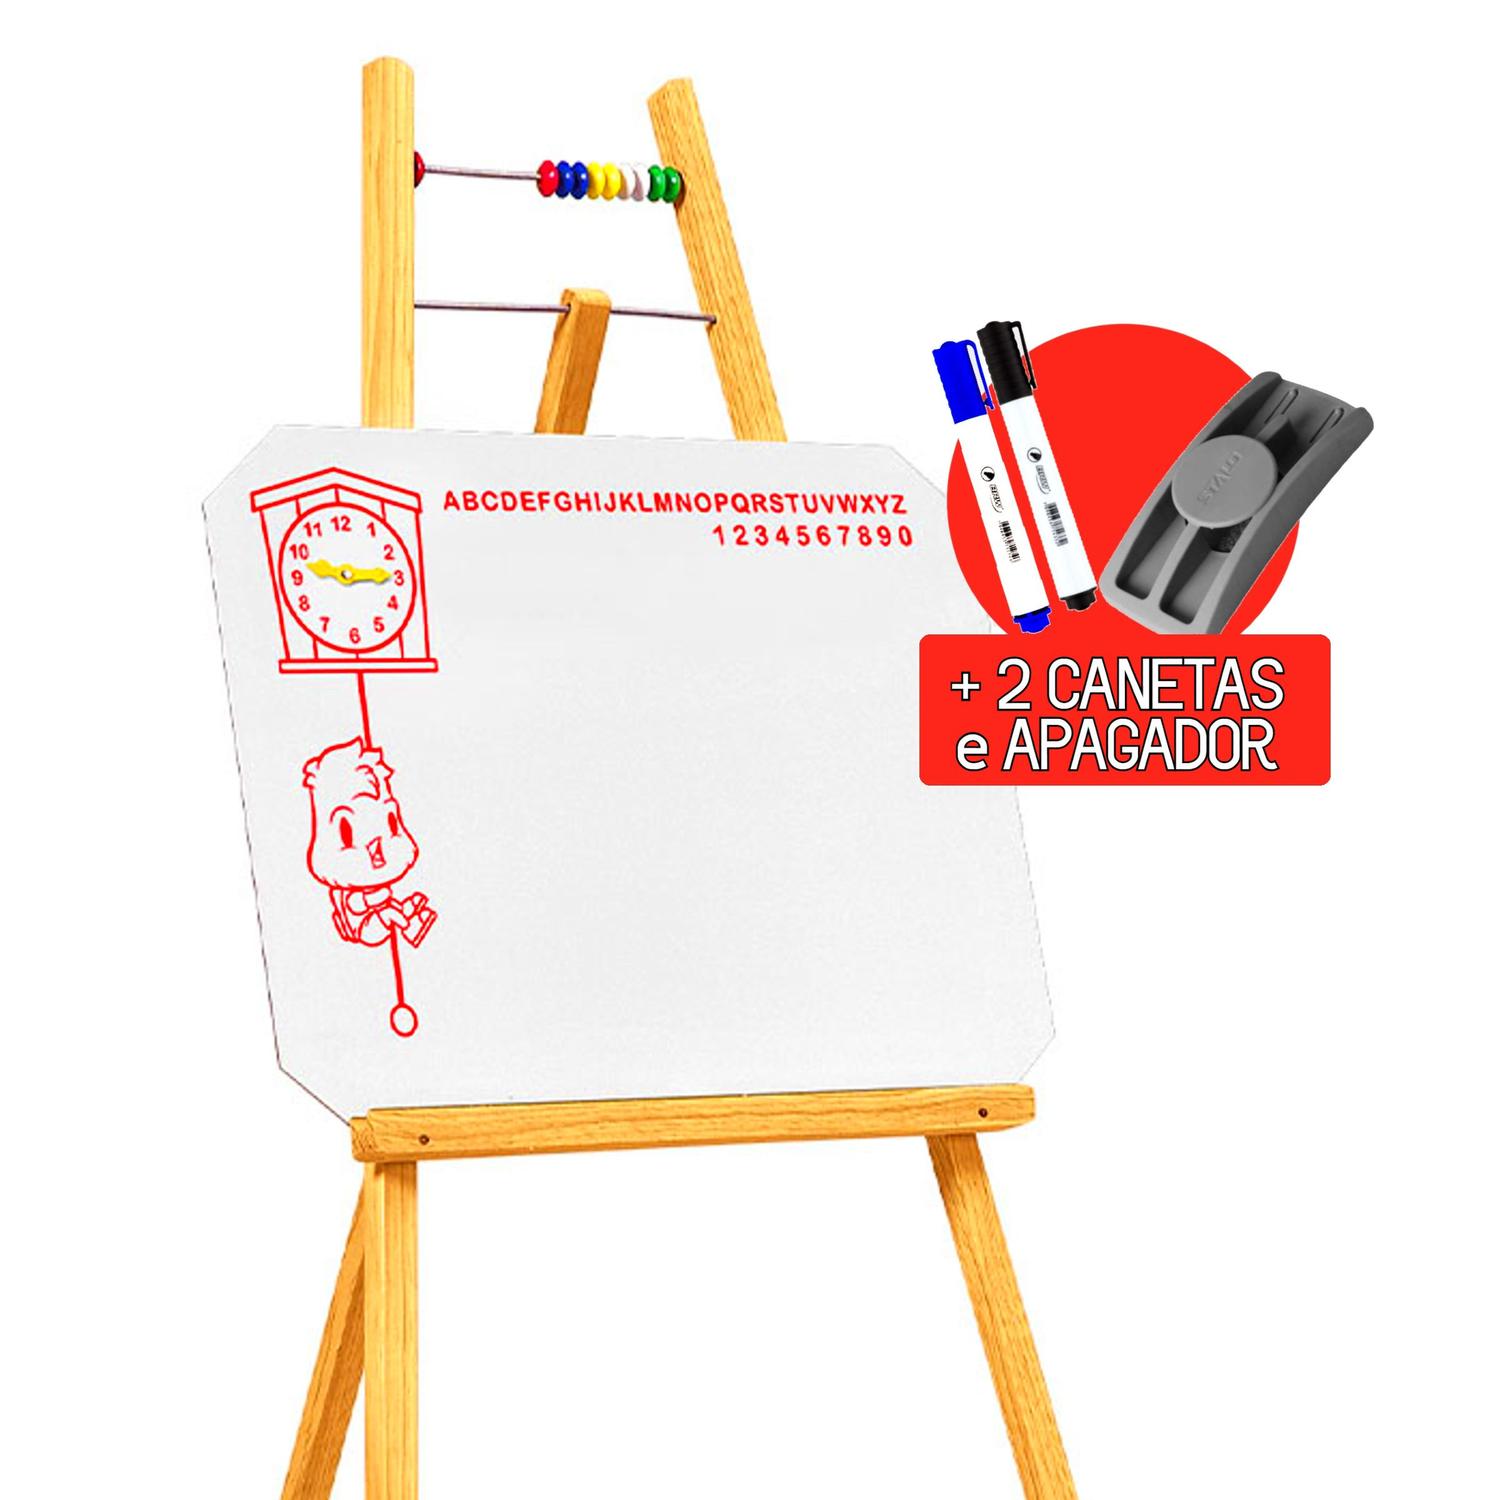 Jogo Infantil Torre Maluca Jogo Estratégia Super Divertido - Art Brink -  Brinquedos de Estratégia - Magazine Luiza